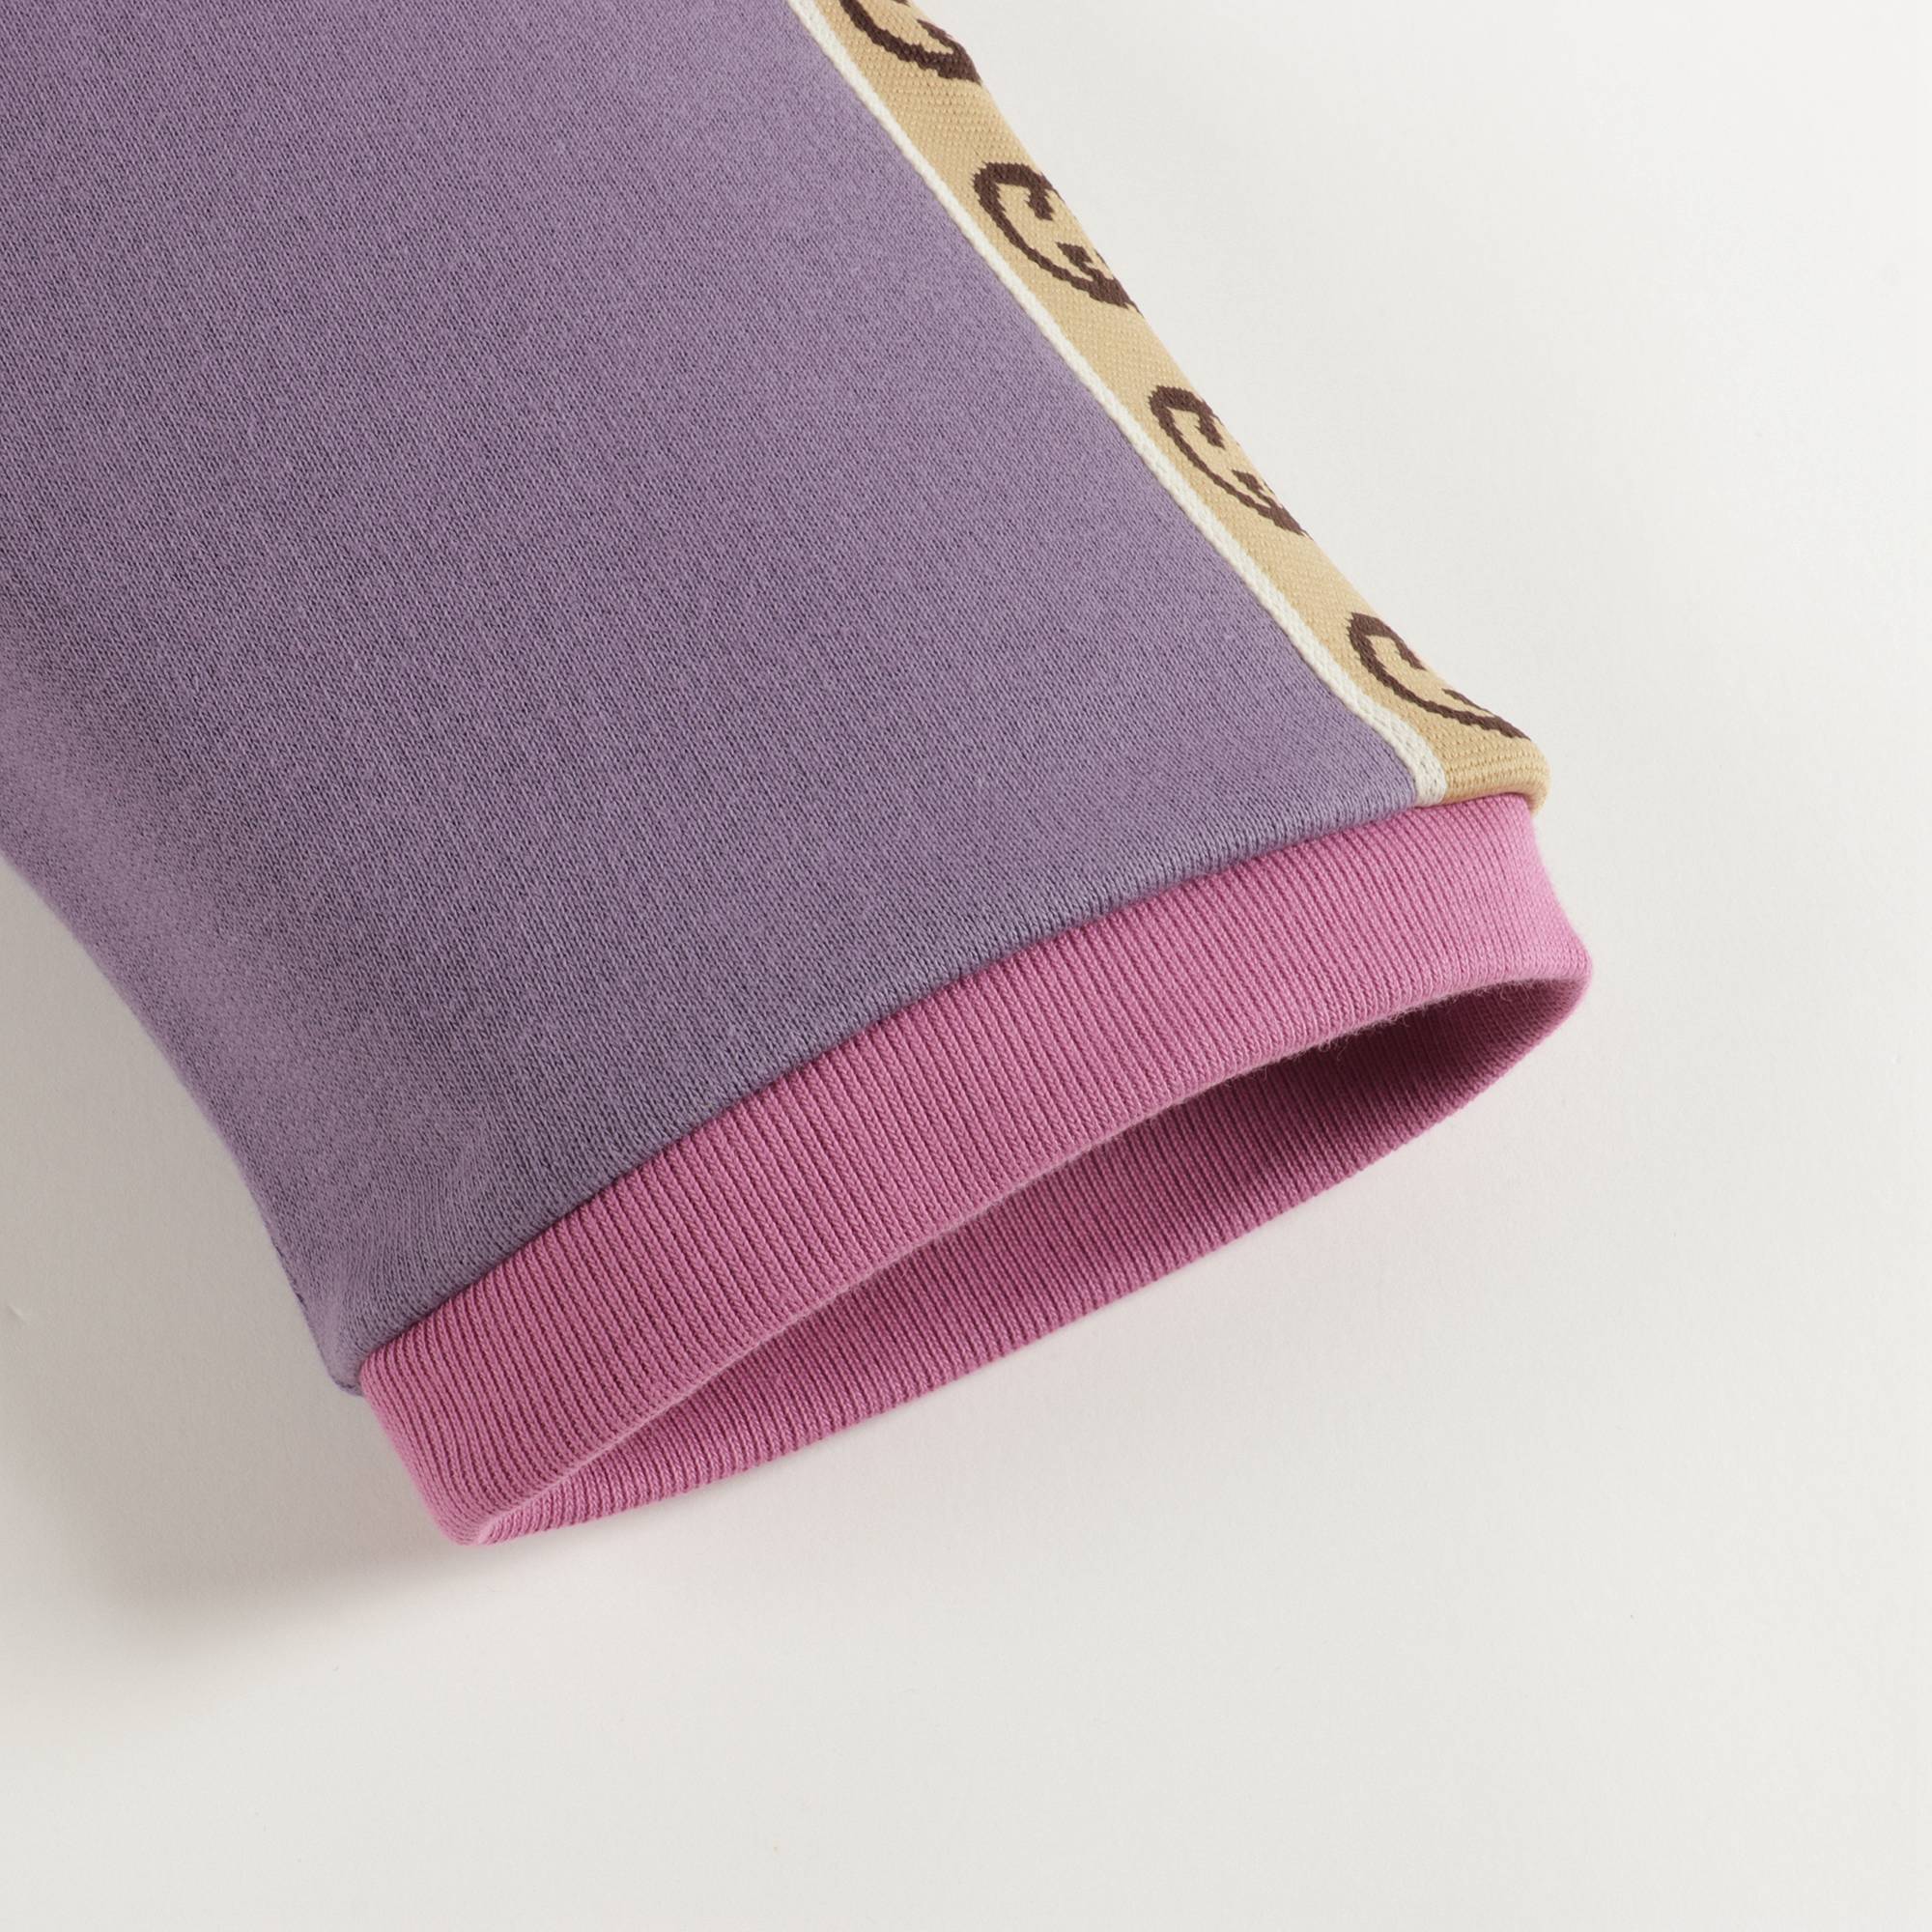 Girls Purple Zip-up Cotton Sweatshirt